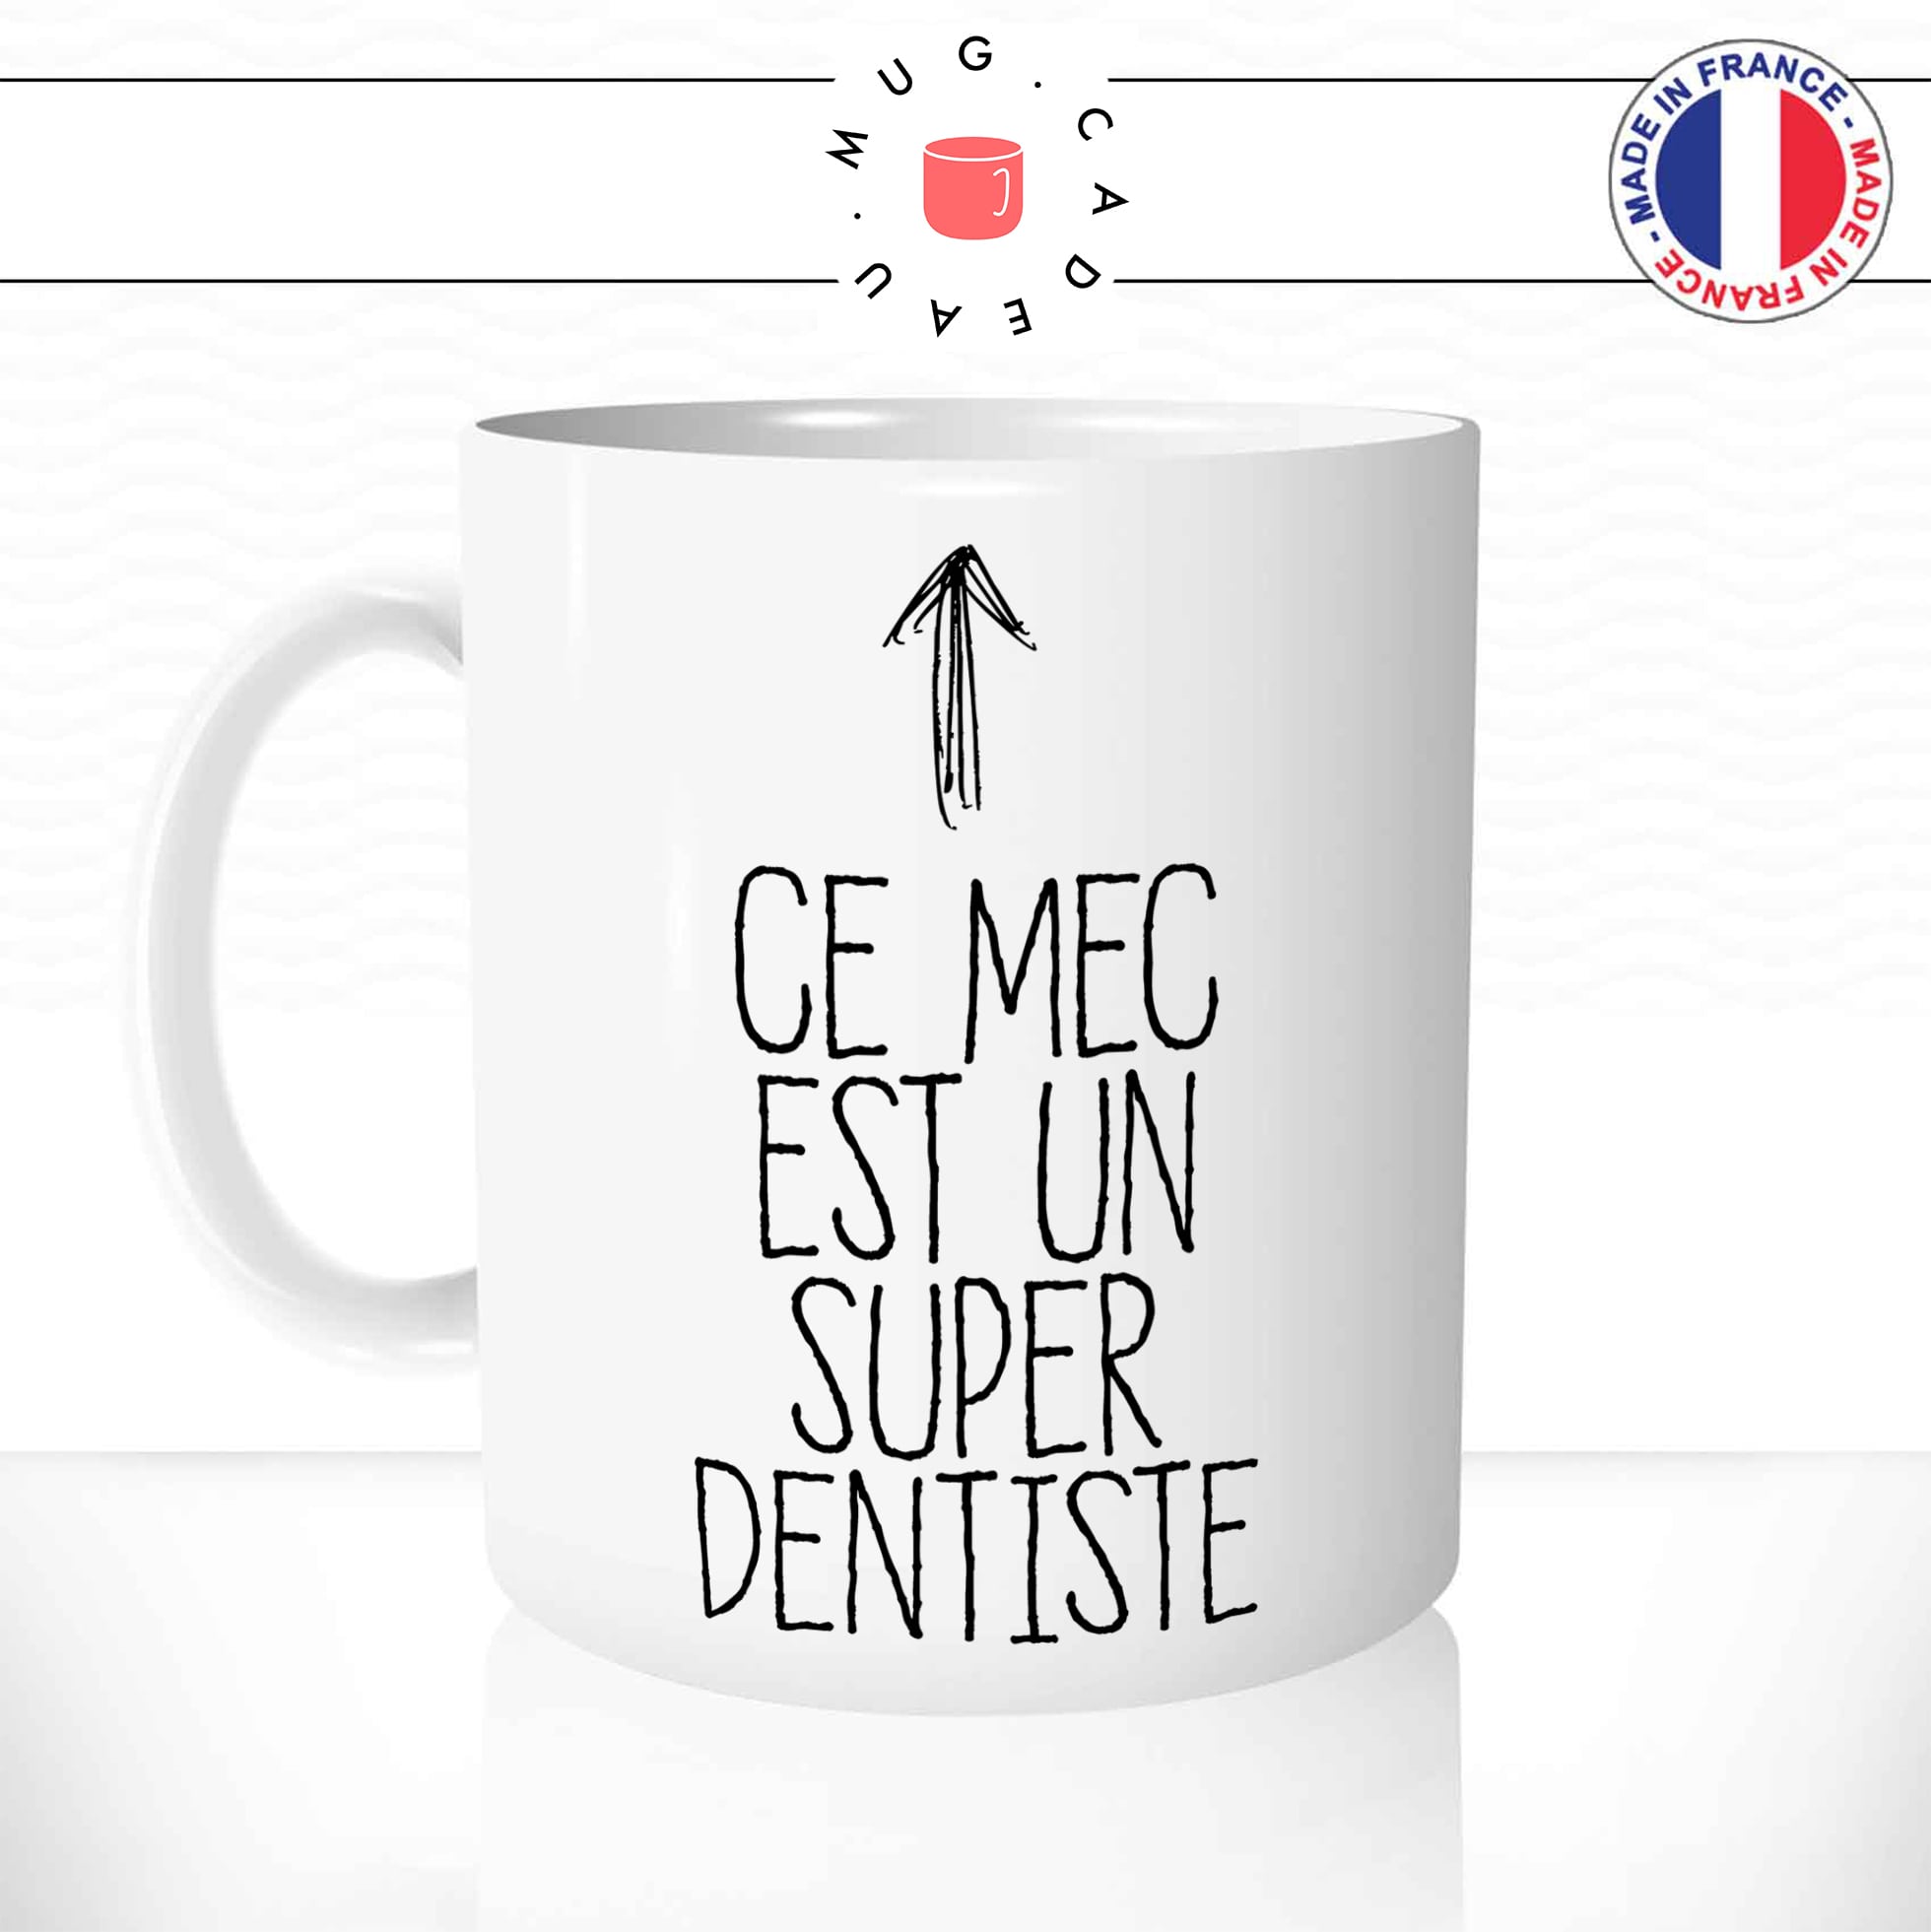 mug-tasse-ce-mec-est-un-super-dentiste-medecin-metier-dent-homme-humour-fun-reveil-café-thé-mugs-tasses-idée-cadeau-original-personnalisée-min